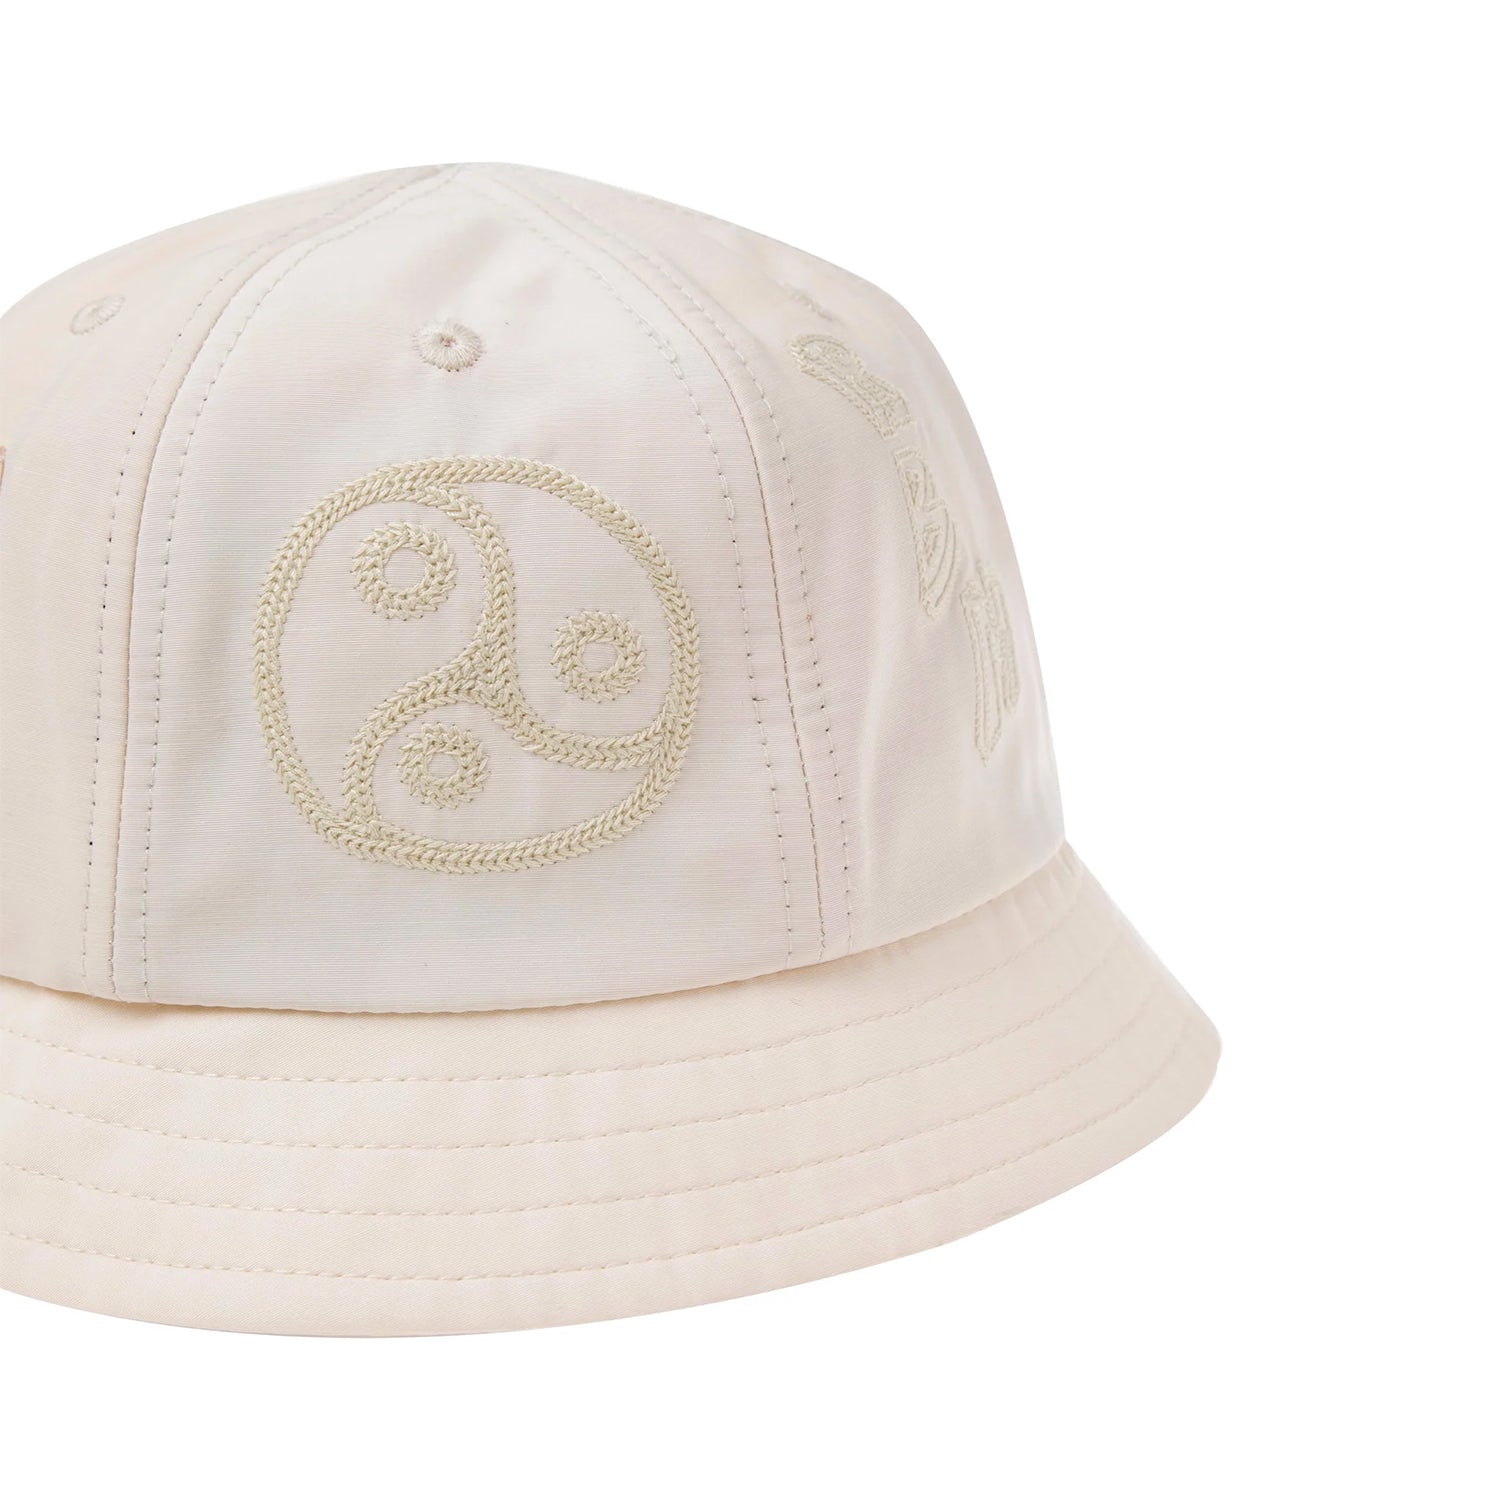 Getaway Bucket Hat (Cream)